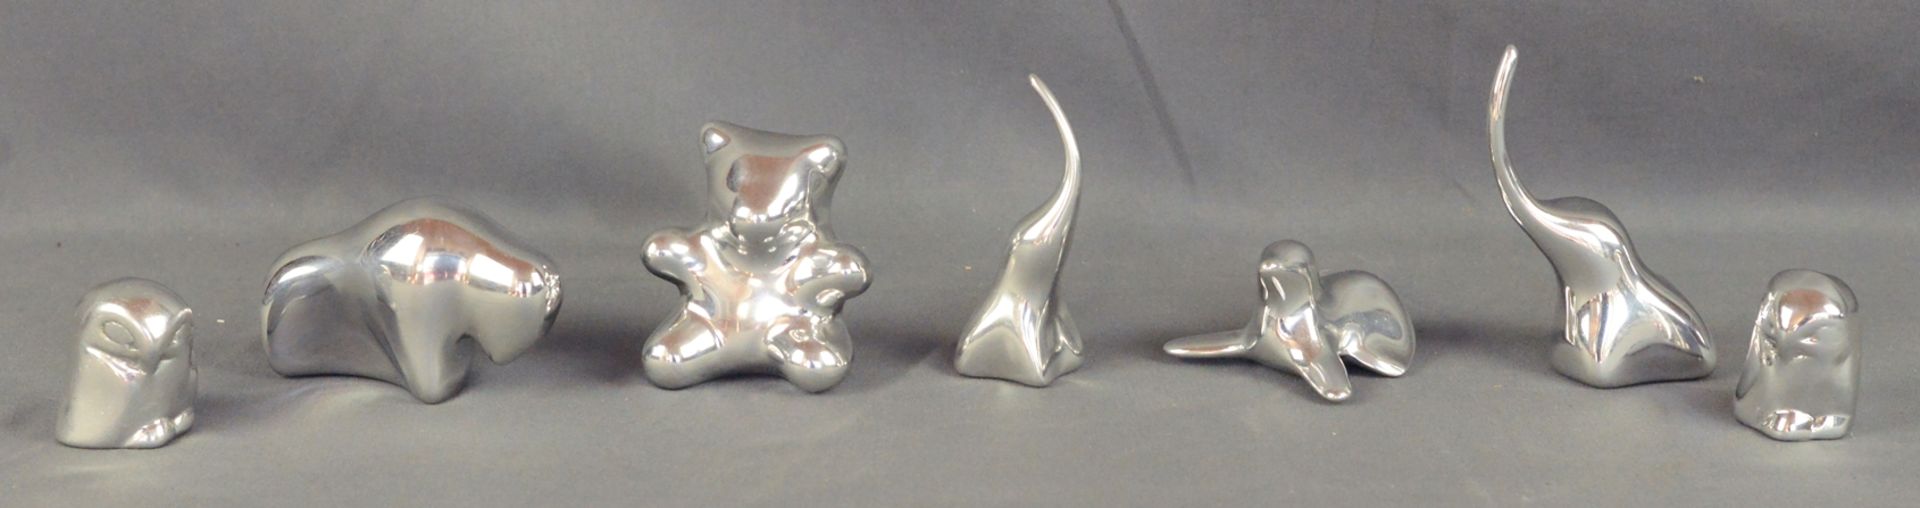 Hoselton, Gordon, 7 Tierskulpturen, Kanada, Aluminium, bestehend aus einem Bären (H 6,5cm), einem